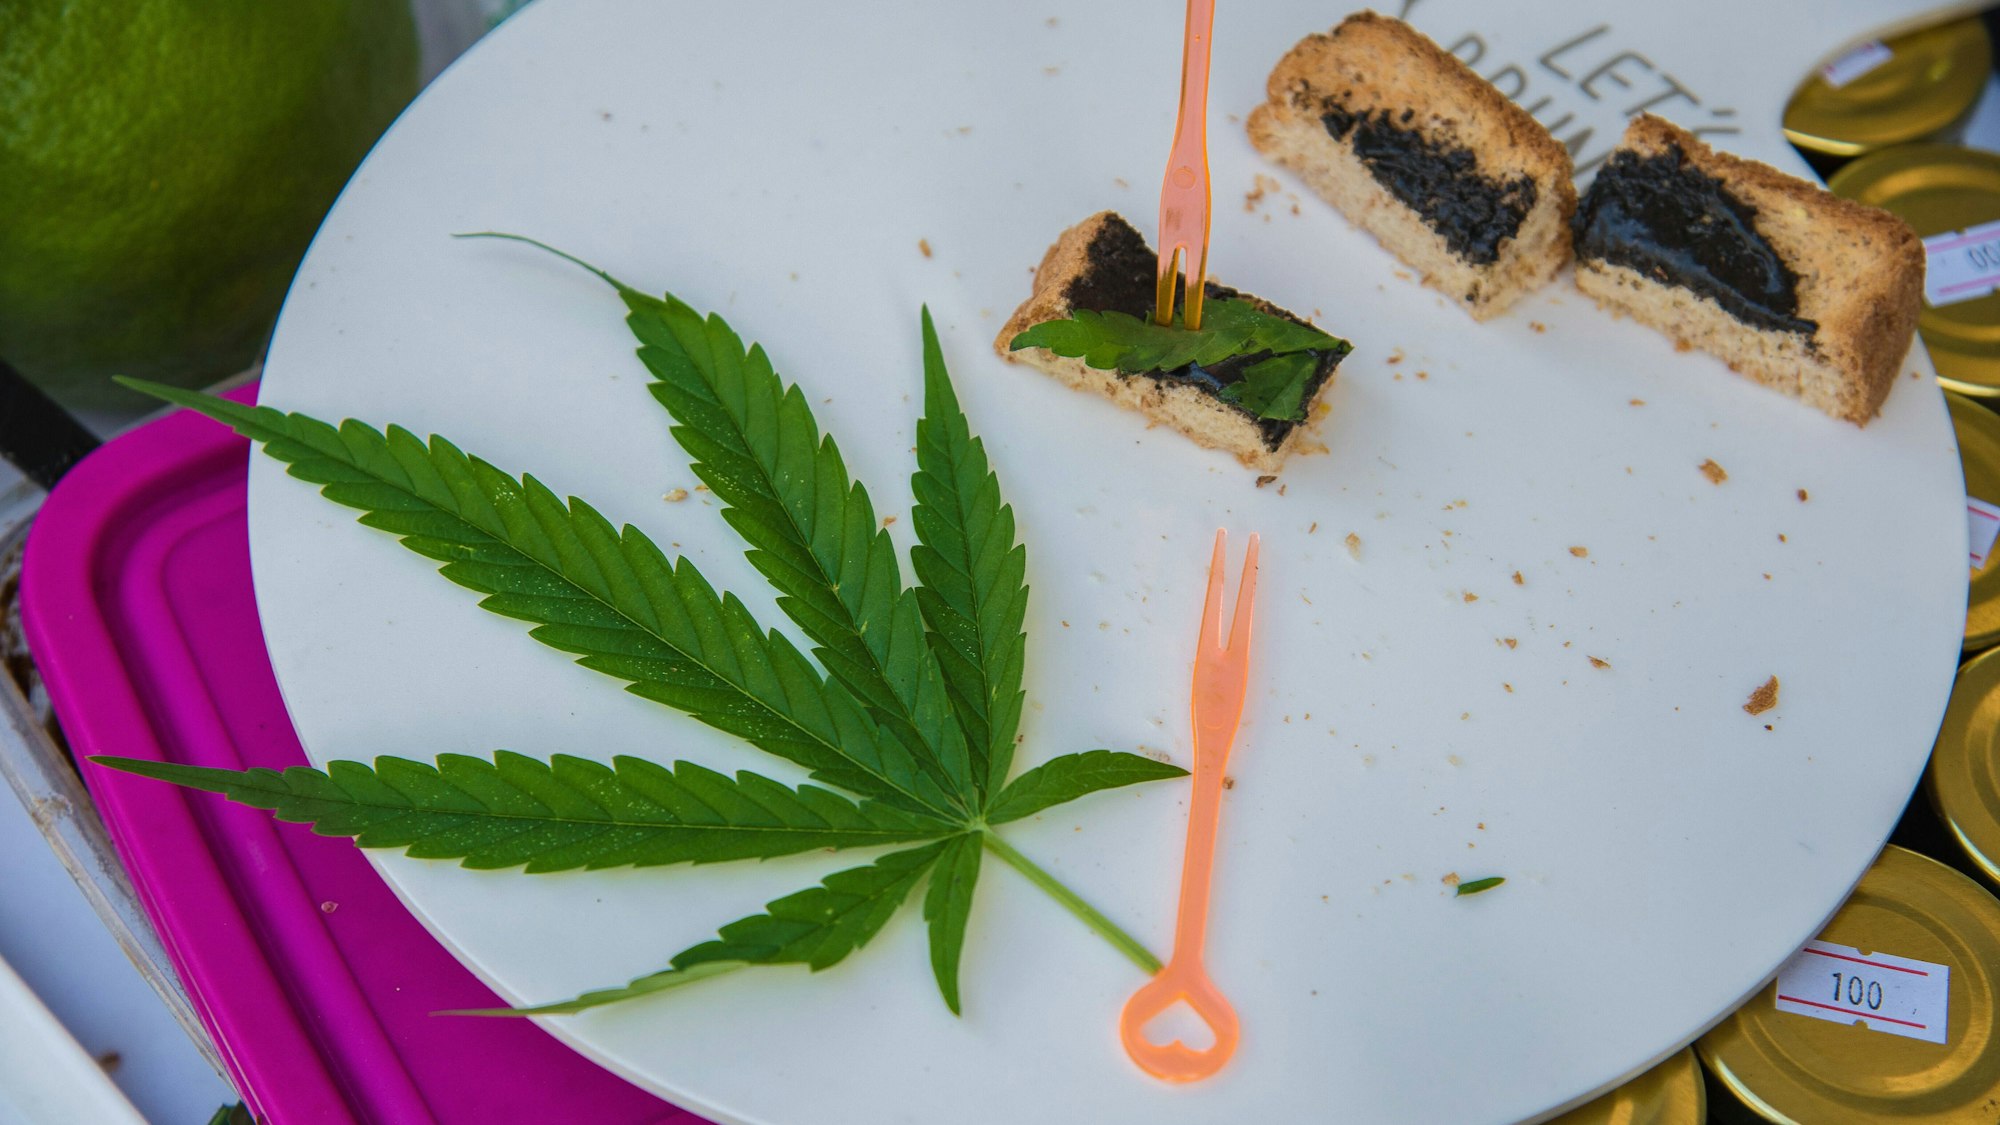 Auf einem Teller liegt Kuchen und ein Cannabis-Blatt.